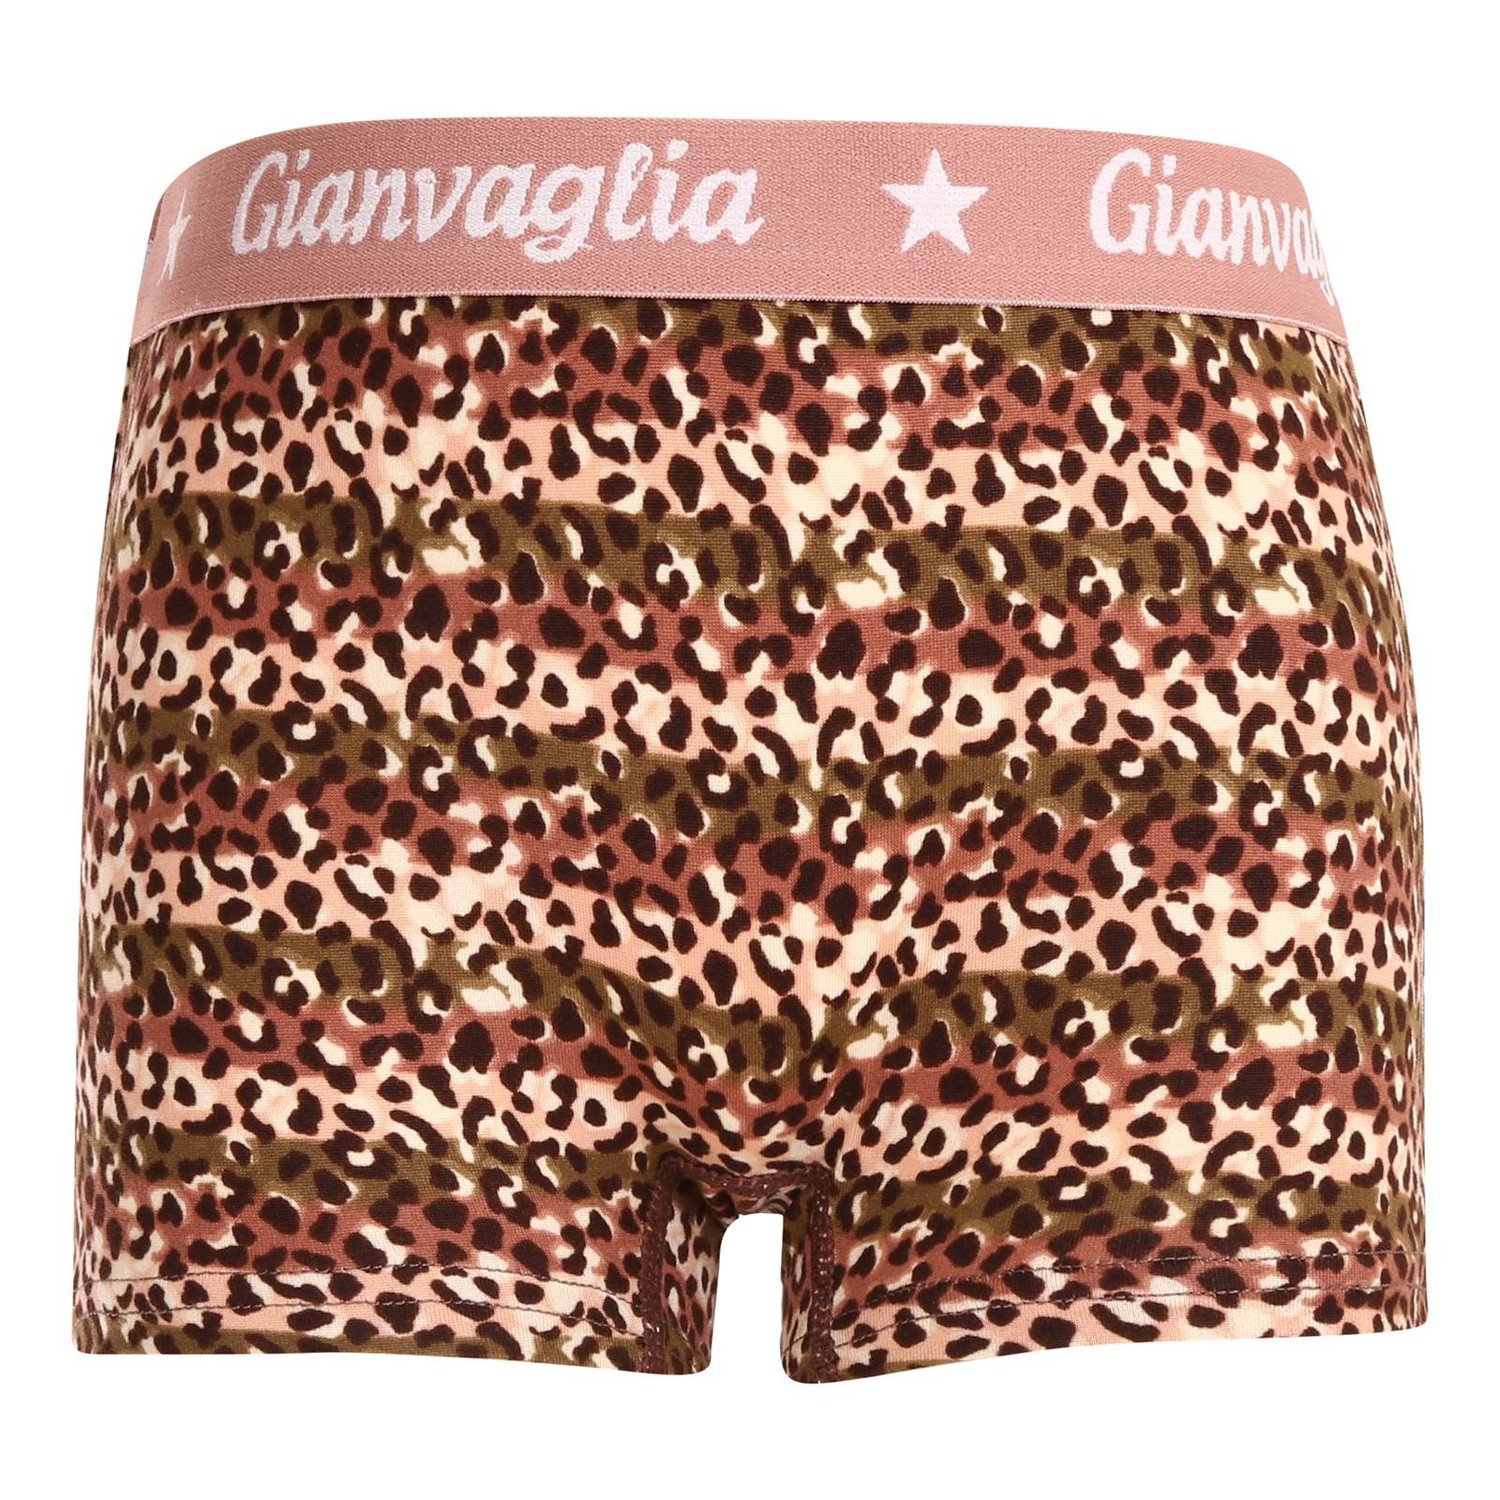 Dívčí kalhotky s nohavičkou boxerky Gianvaglia růžové (813) 140